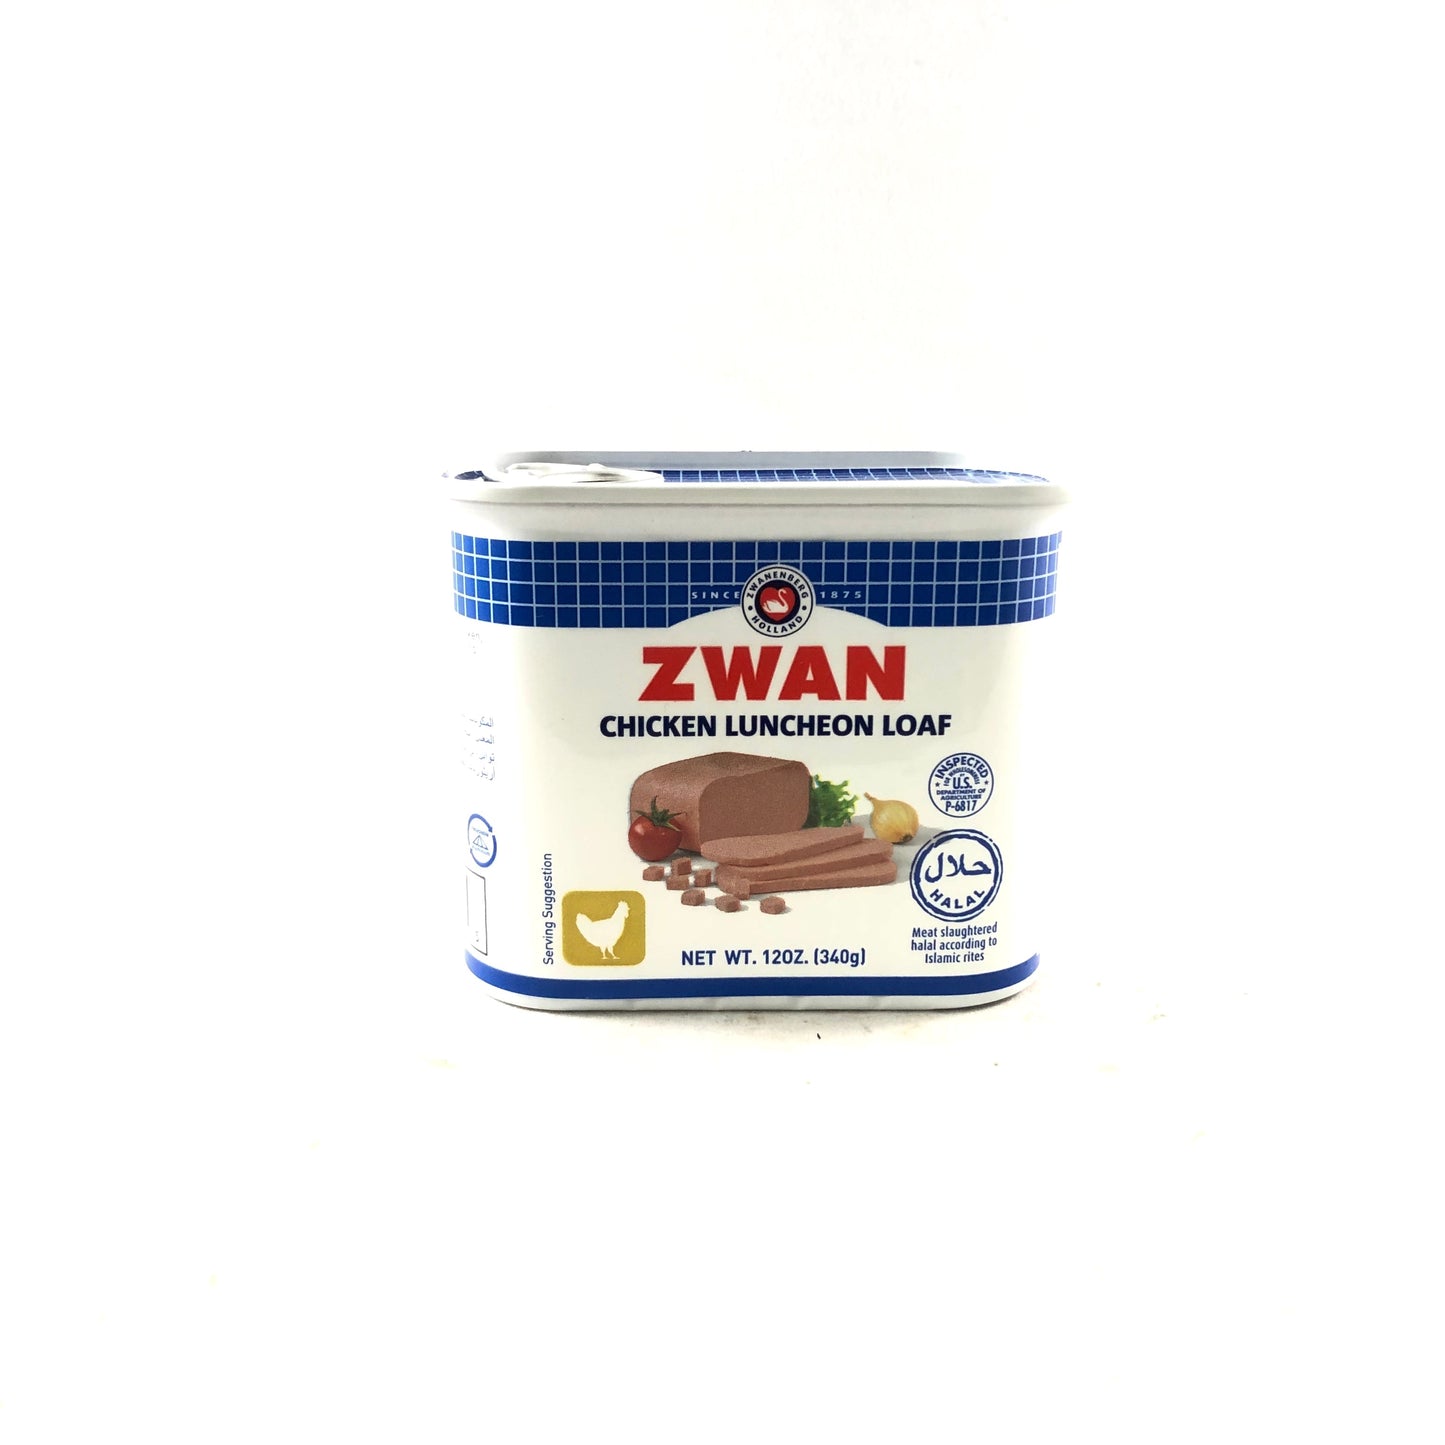 Zwan Chicken Luncheon Loaf 12oz x 5 Cans - Break Stop